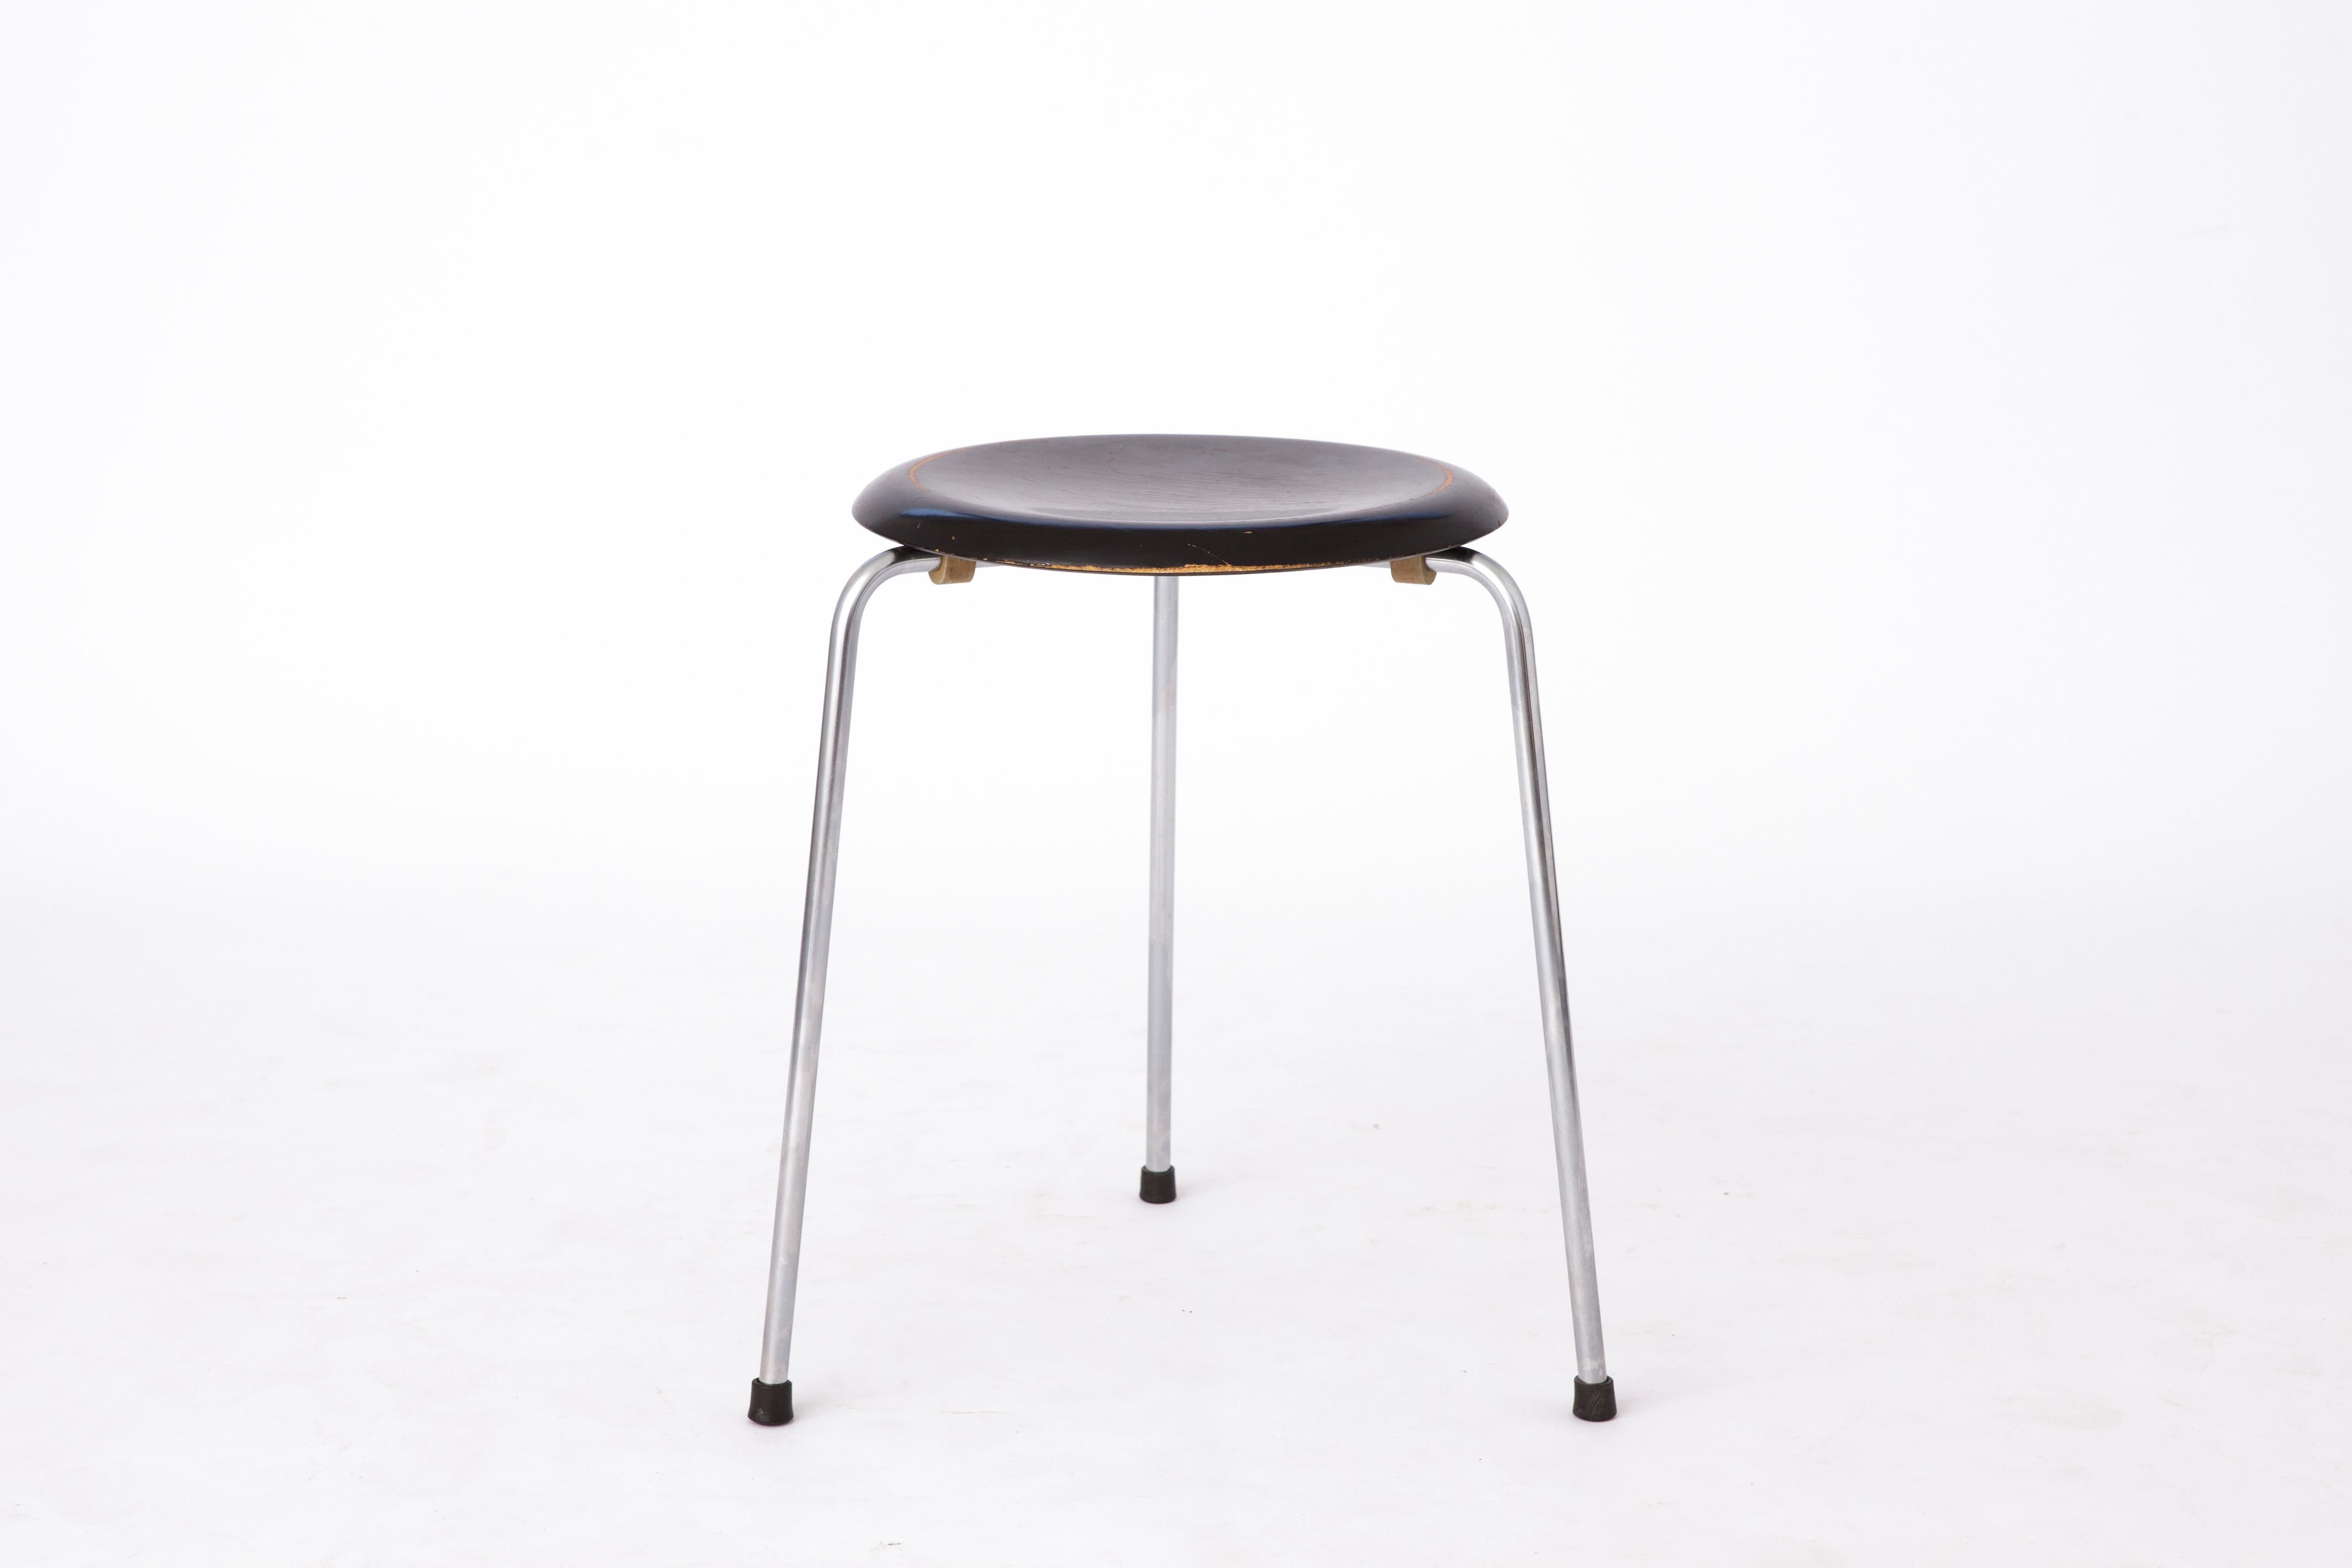 Le tabouret DOT a été conçu par Arne Jacobsen dans les années 1950, en même temps que la chaise Ant ou la Fourmi, et fabriqué par Fritz Hansen. Officiellement, il est apparu en 1954 sous la forme d'un tabouret à trois pieds en placage. À partir de